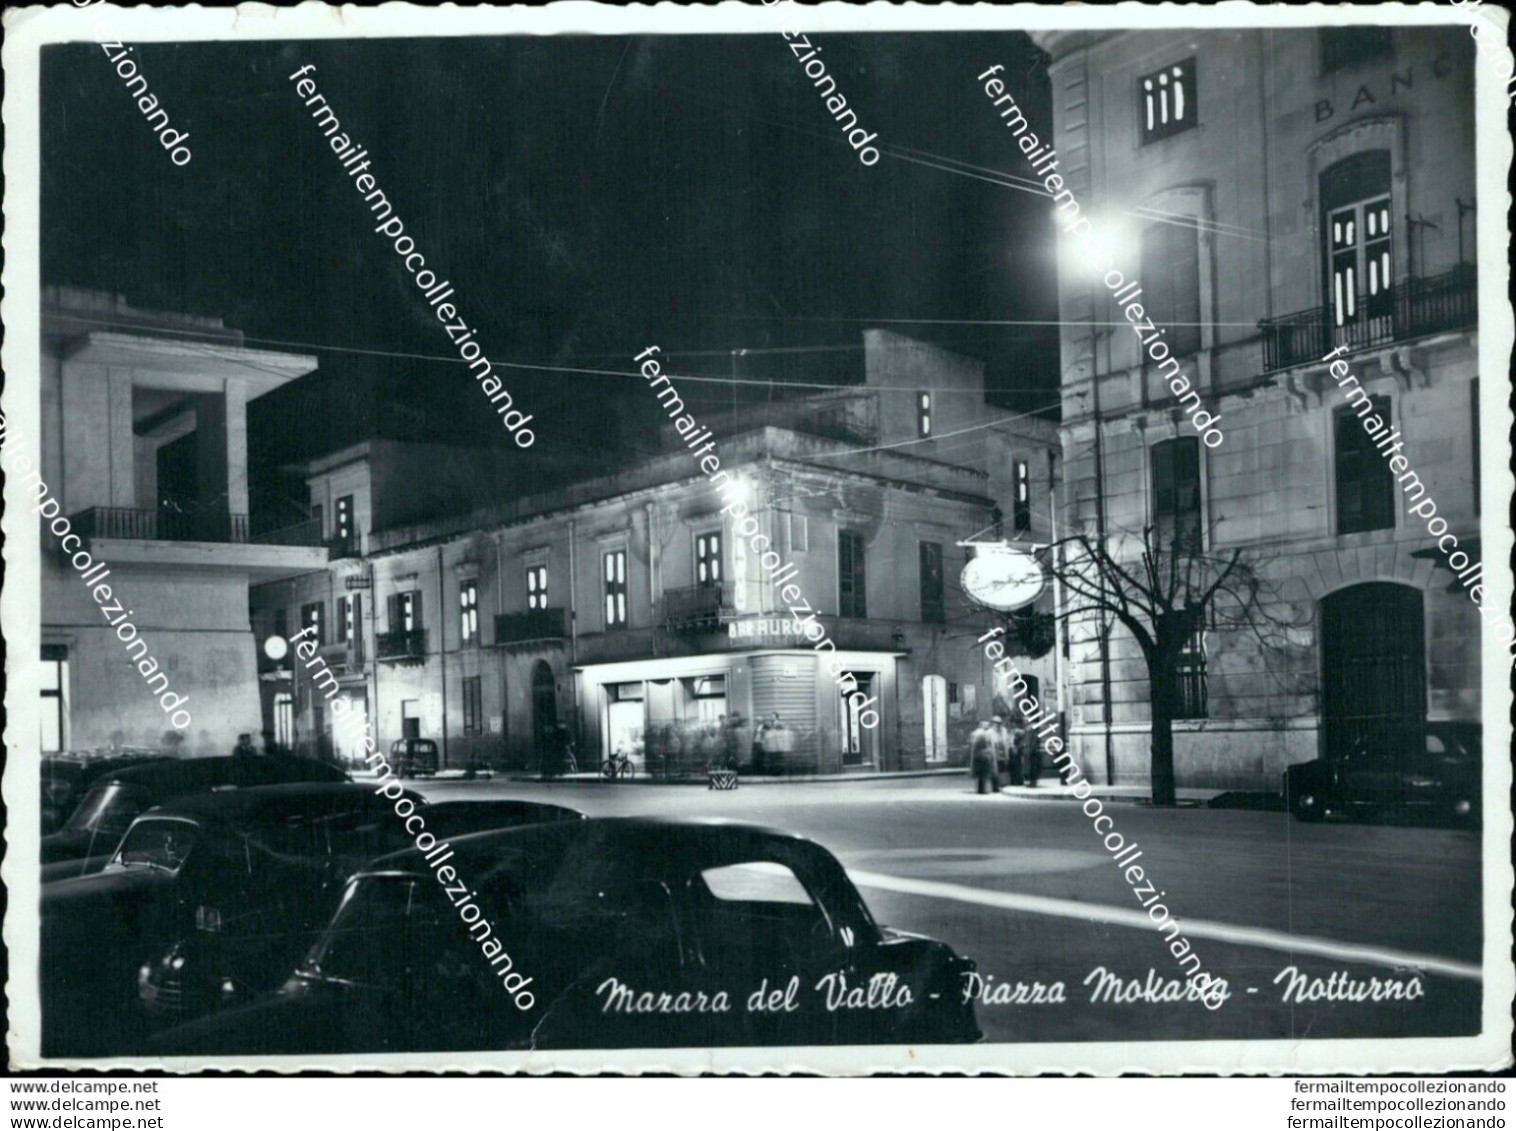 Bm535 Cartolina Mazara Del Vallo Piazza Mokarta Notturno Trapani - Trapani